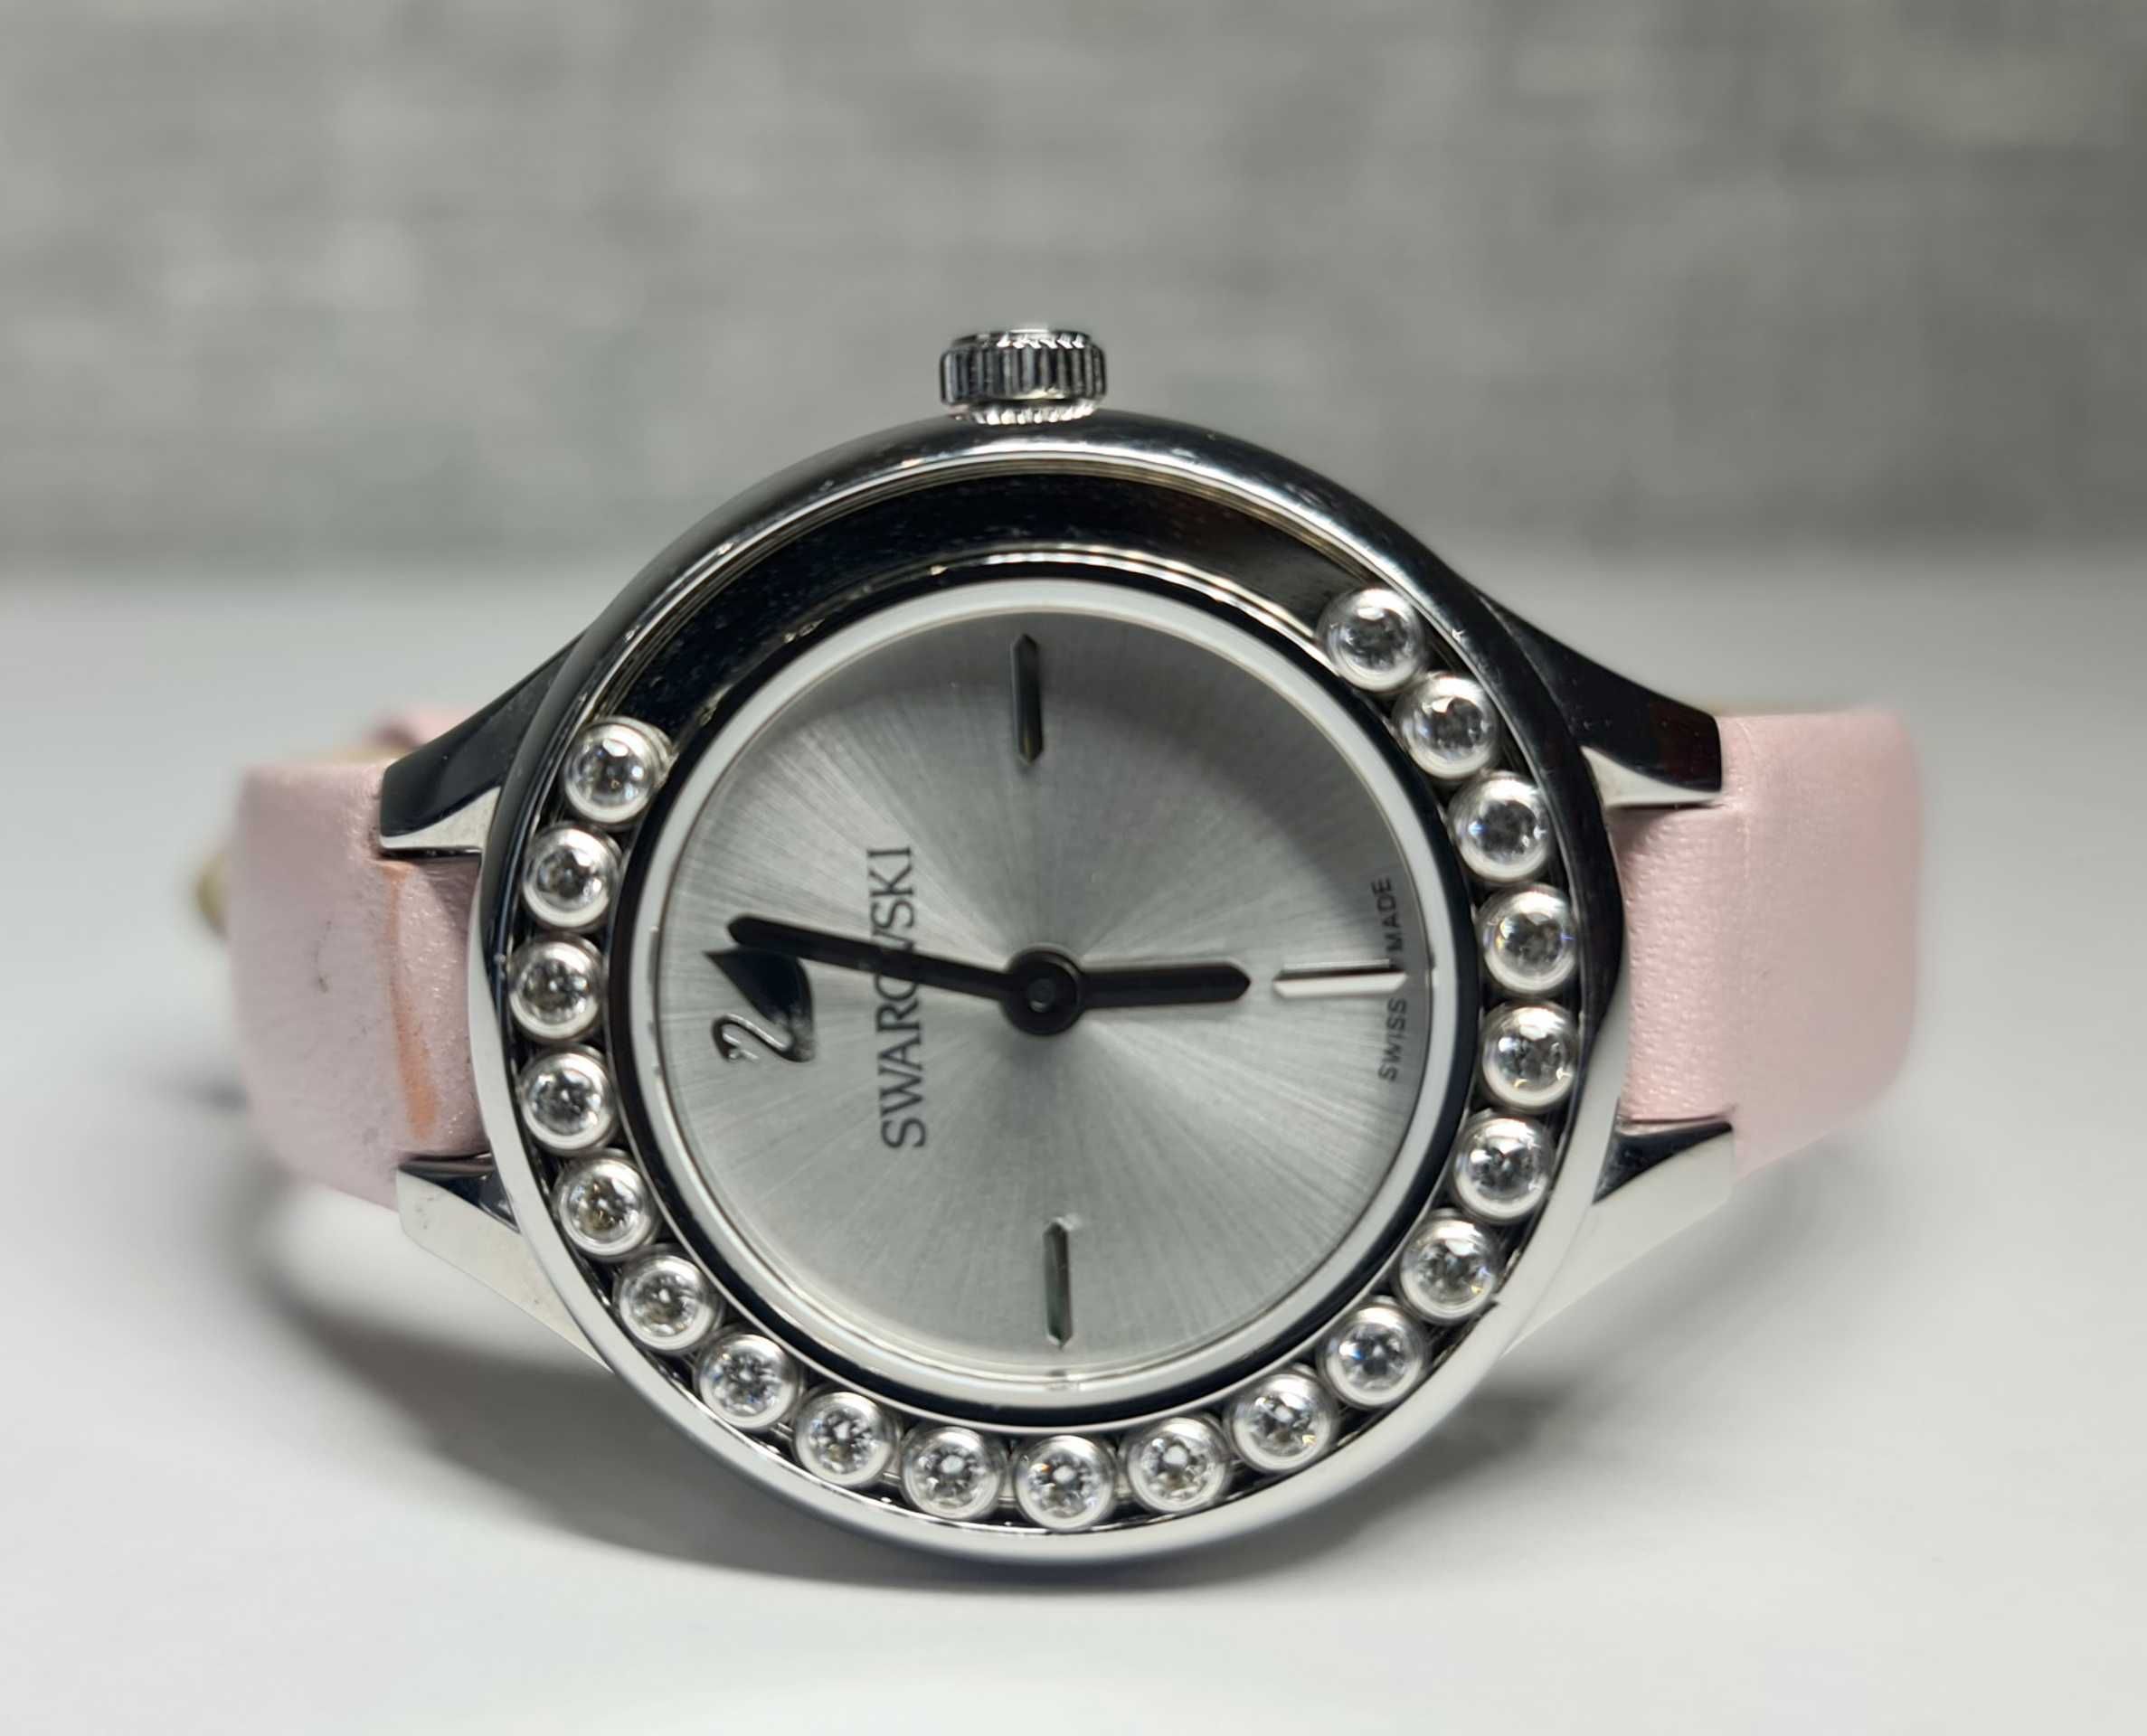 Жіночий годинник Swarovski 5261493 Swiss made